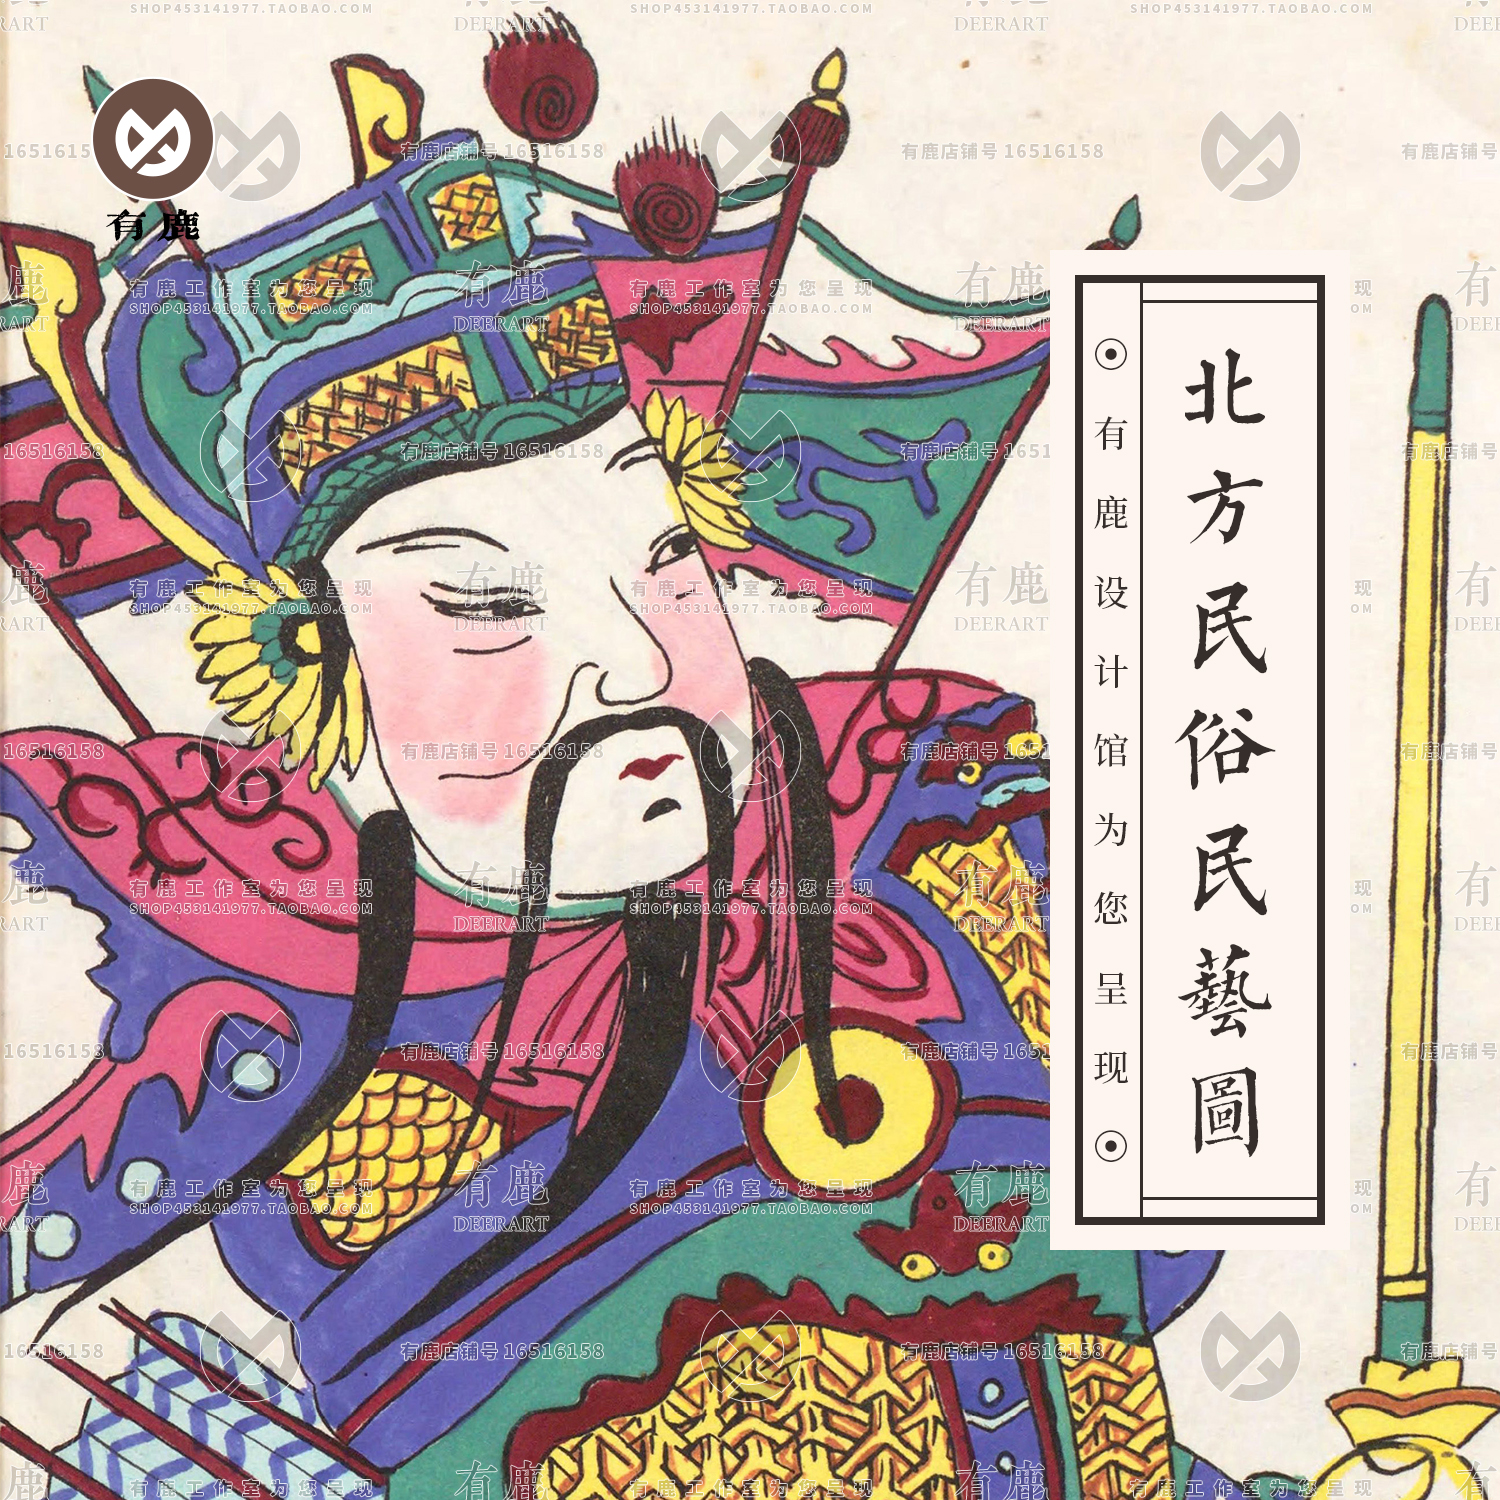 中国北方传统民间民俗年俗神仙图案门神绘画年画图片参考设计素材